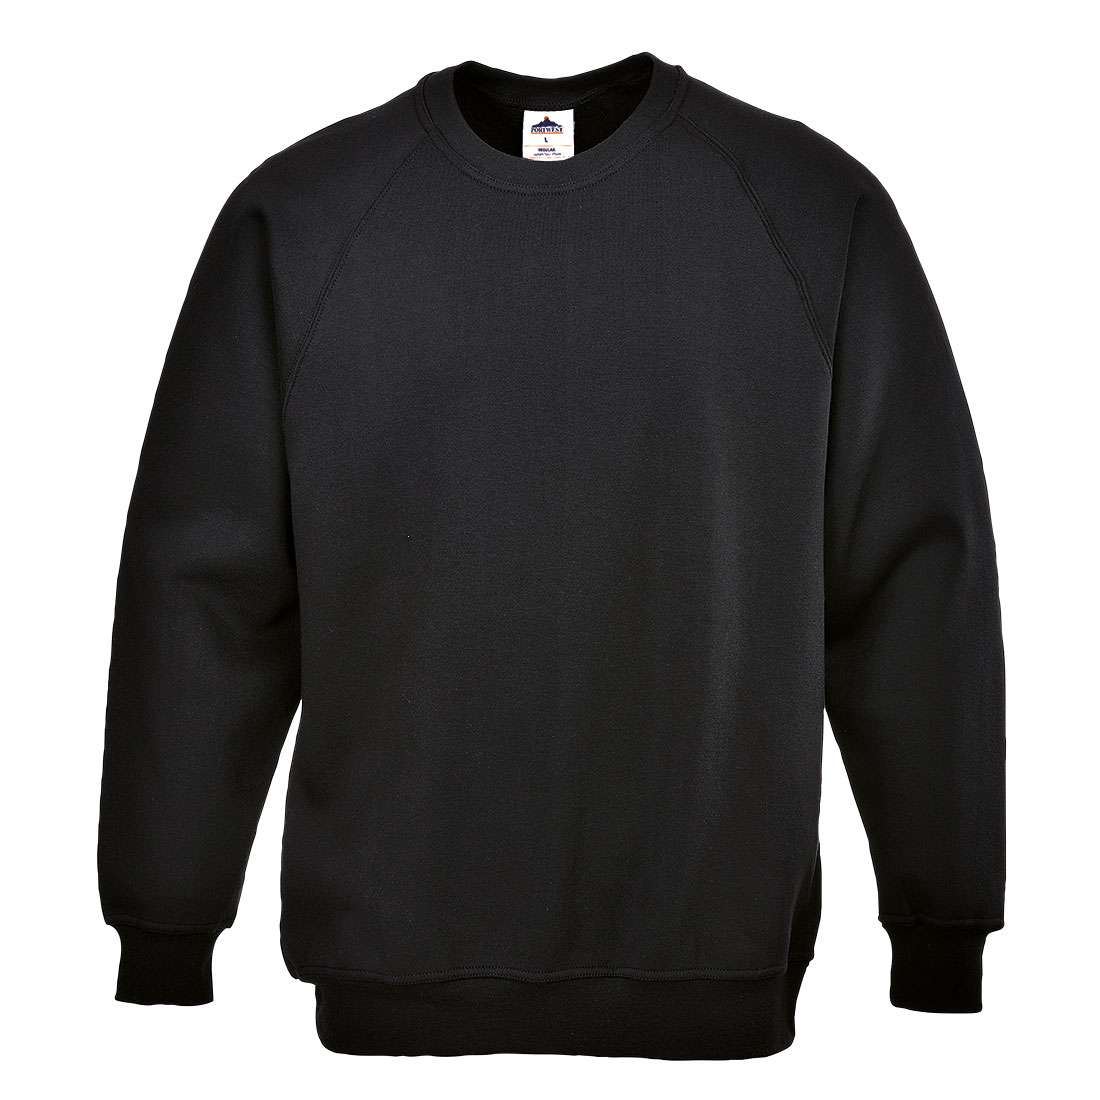 B300 Sweatshirt | Ennis Safety Wear